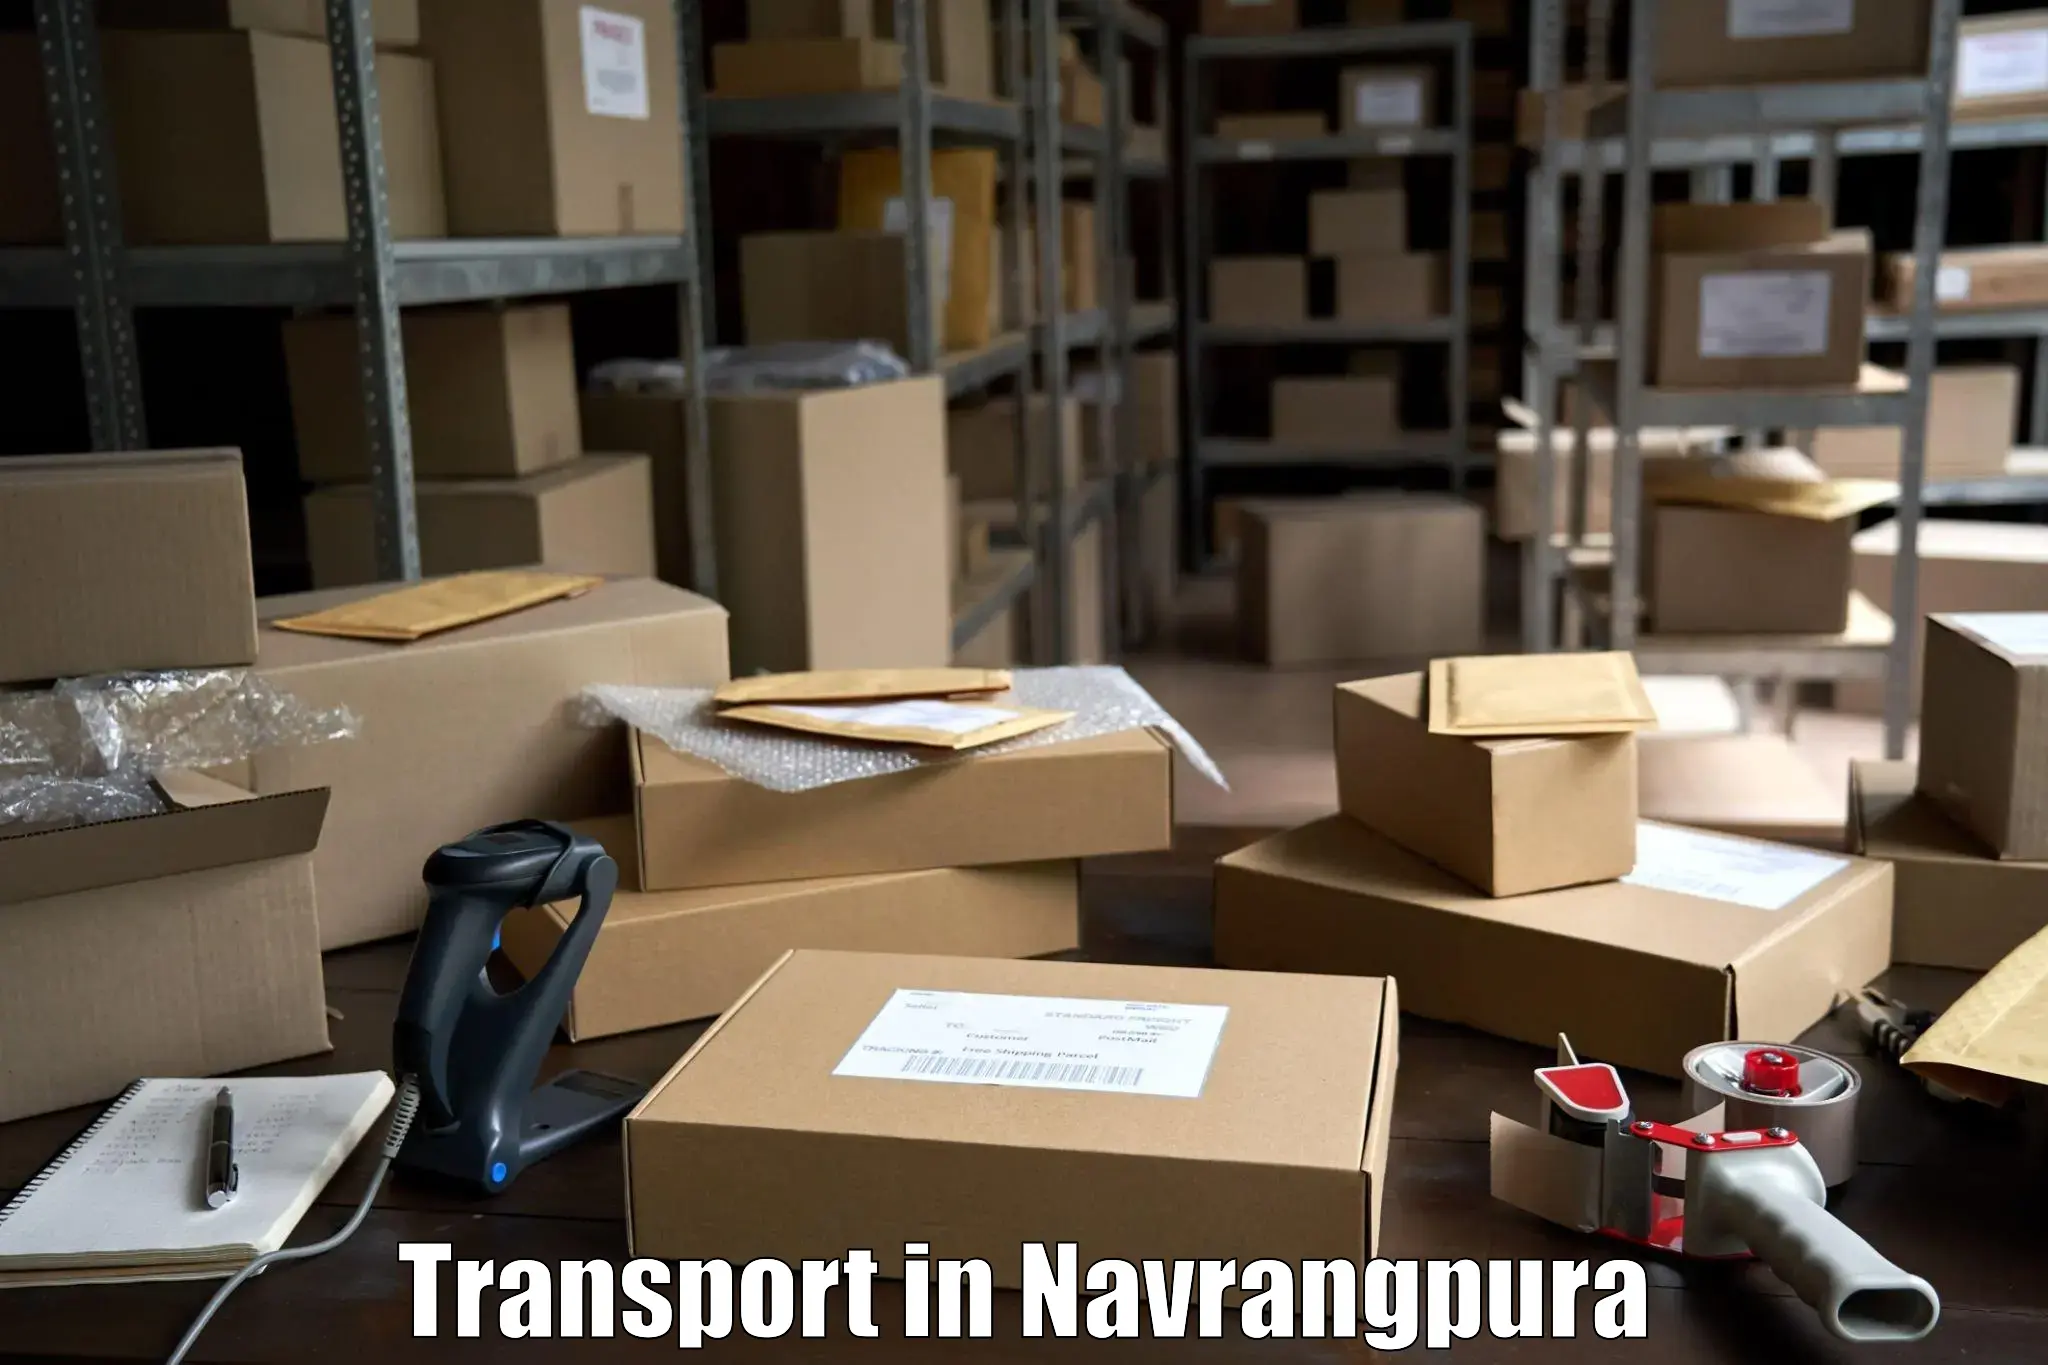 Sending bike to another city in Navrangpura